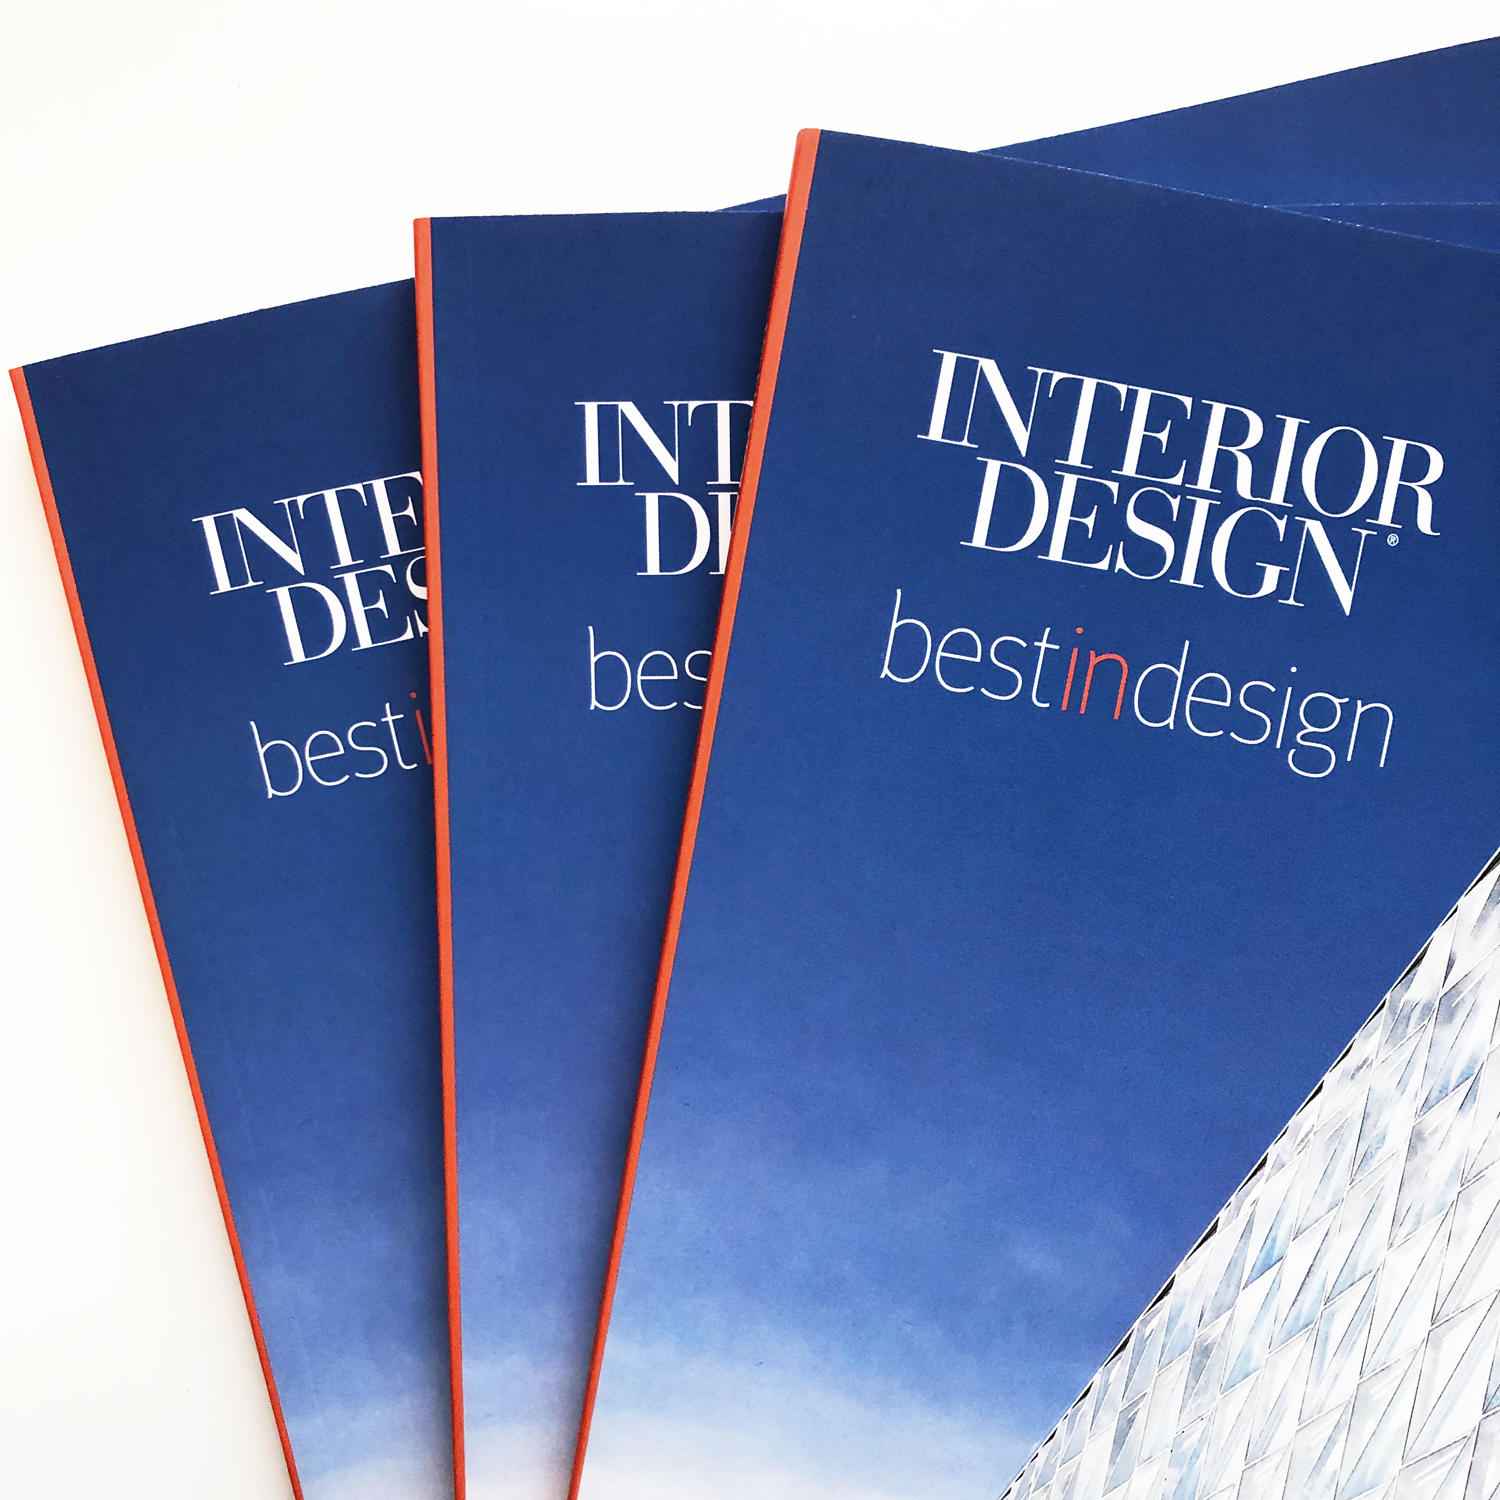 Four51 PH Featured in Interior Design’s “Best in Design”